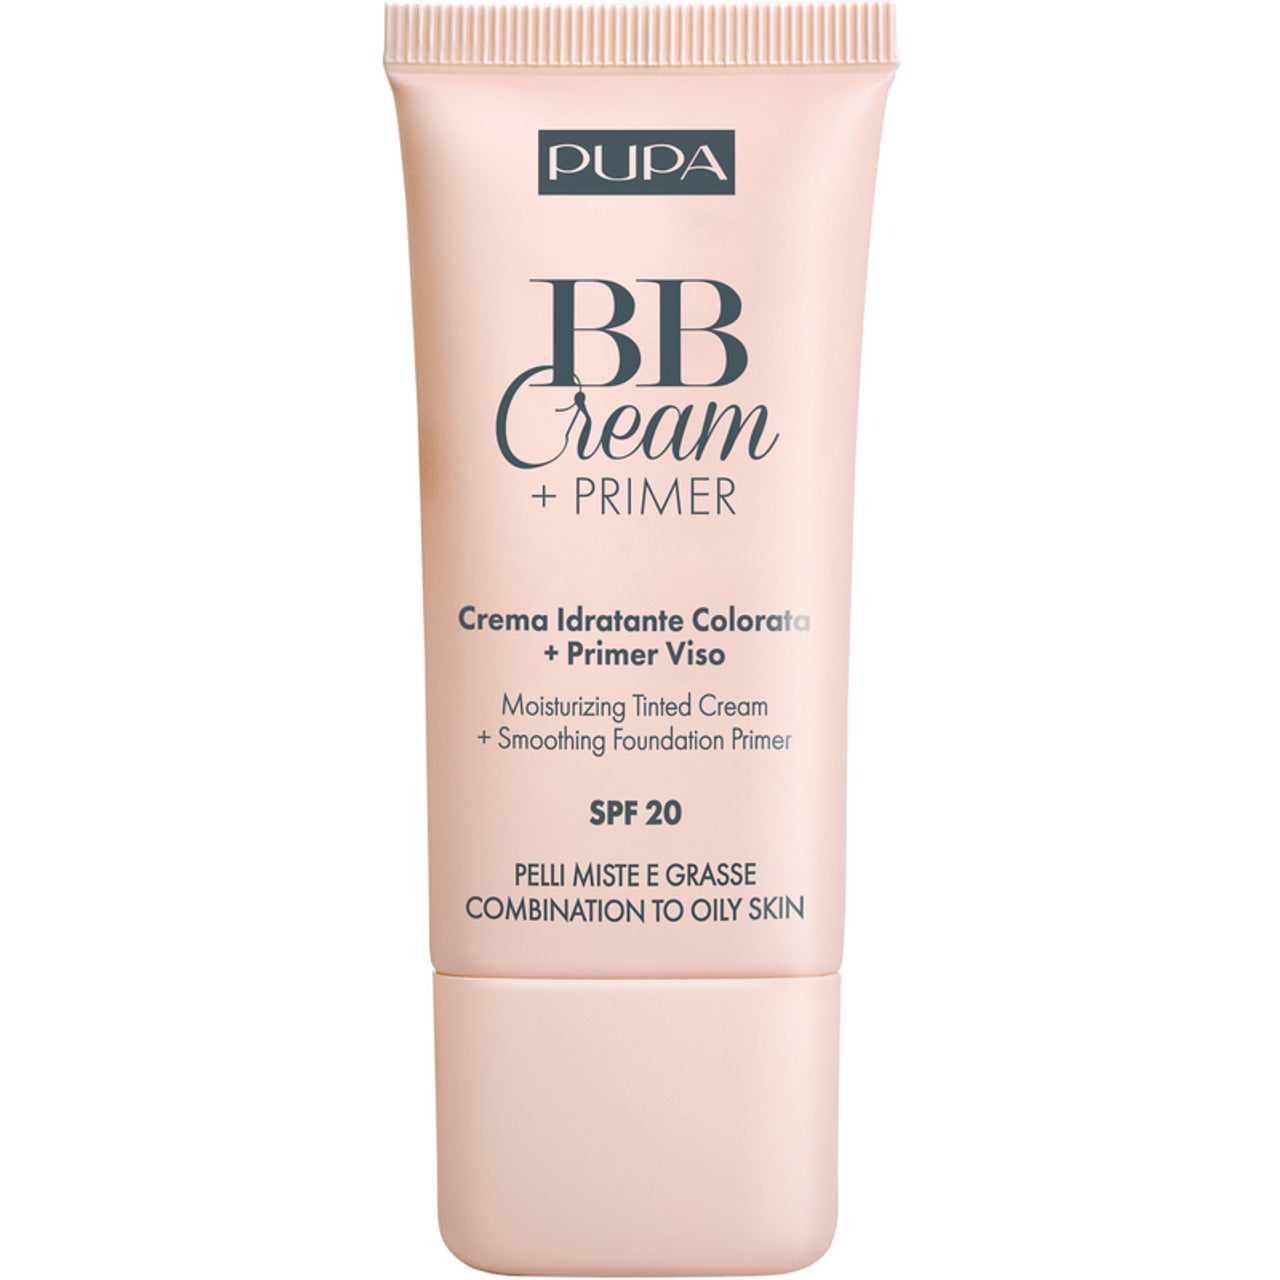 BB Creme und Primer für Mischhaut bis fettige Haut LSF 20 (BB Cream + Primer) 30 ml – Farbton: 001 Nude